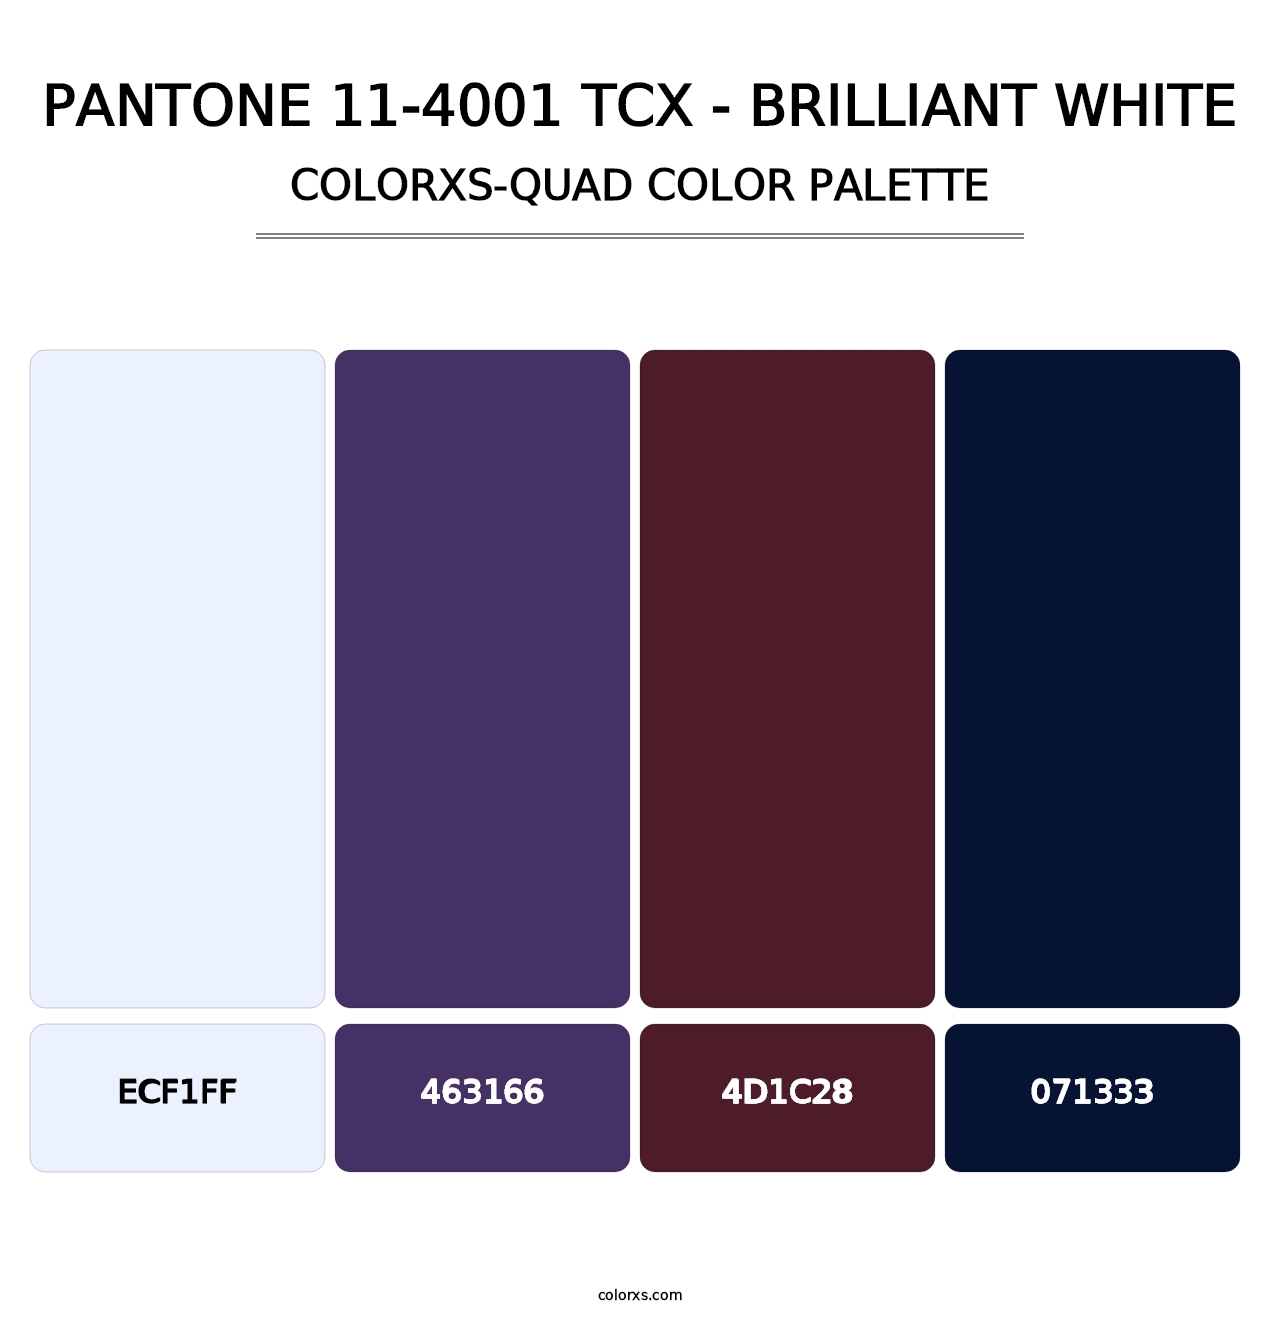 PANTONE 11-4001 TCX - Brilliant White - Colorxs Quad Palette